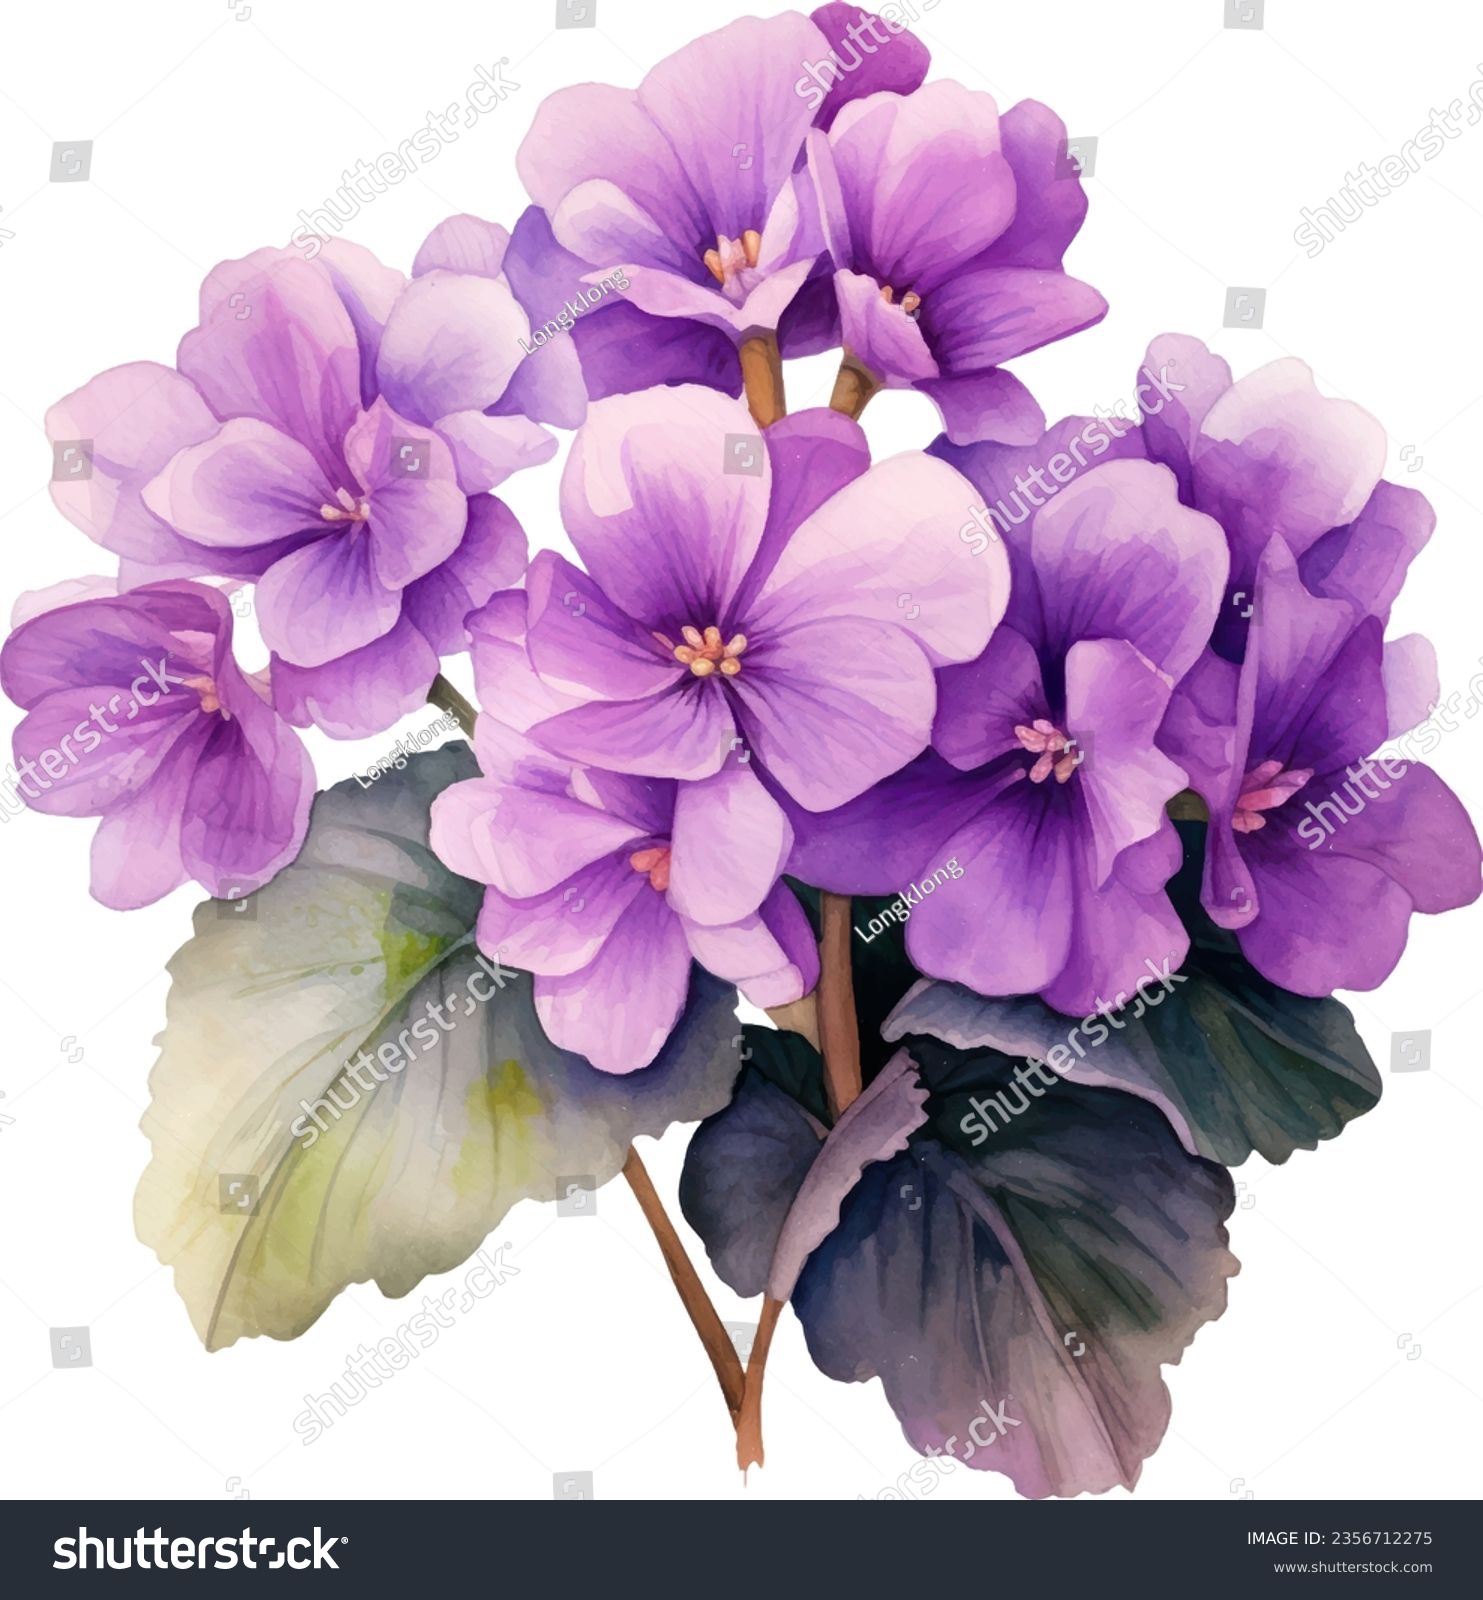 SVG of Streptocarpus Saintpaulia Watercolor floral arrangements with beautiful African Violet flower, Watercolor floral bouquet. svg